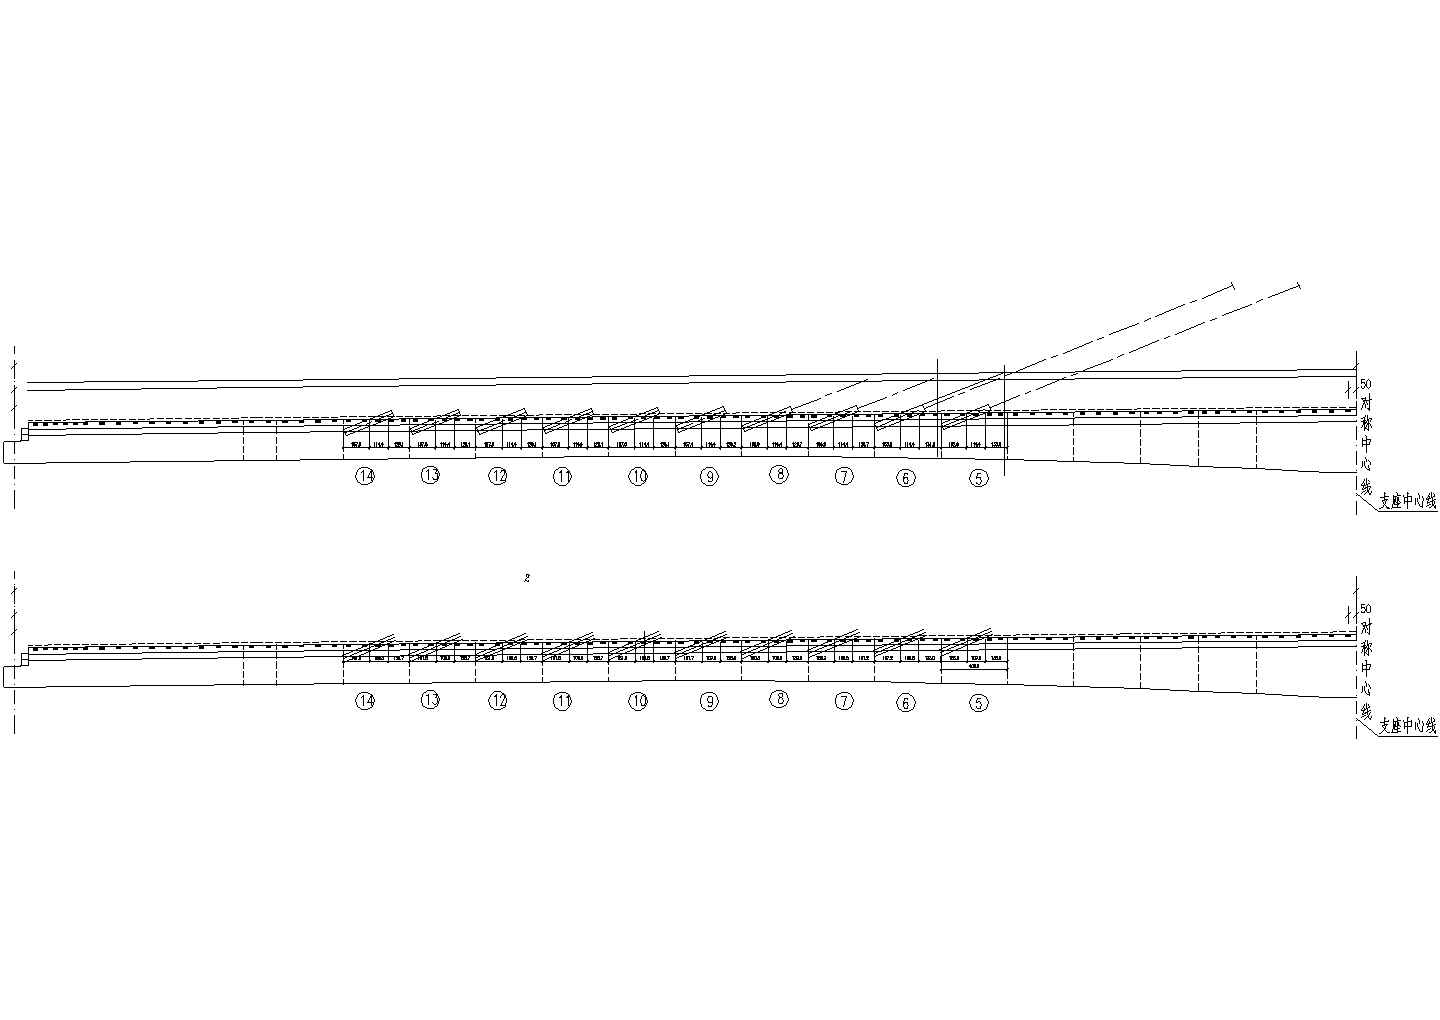 80+80米双孔预应力混凝土部分斜拉桥挂兰位置节点详图设计